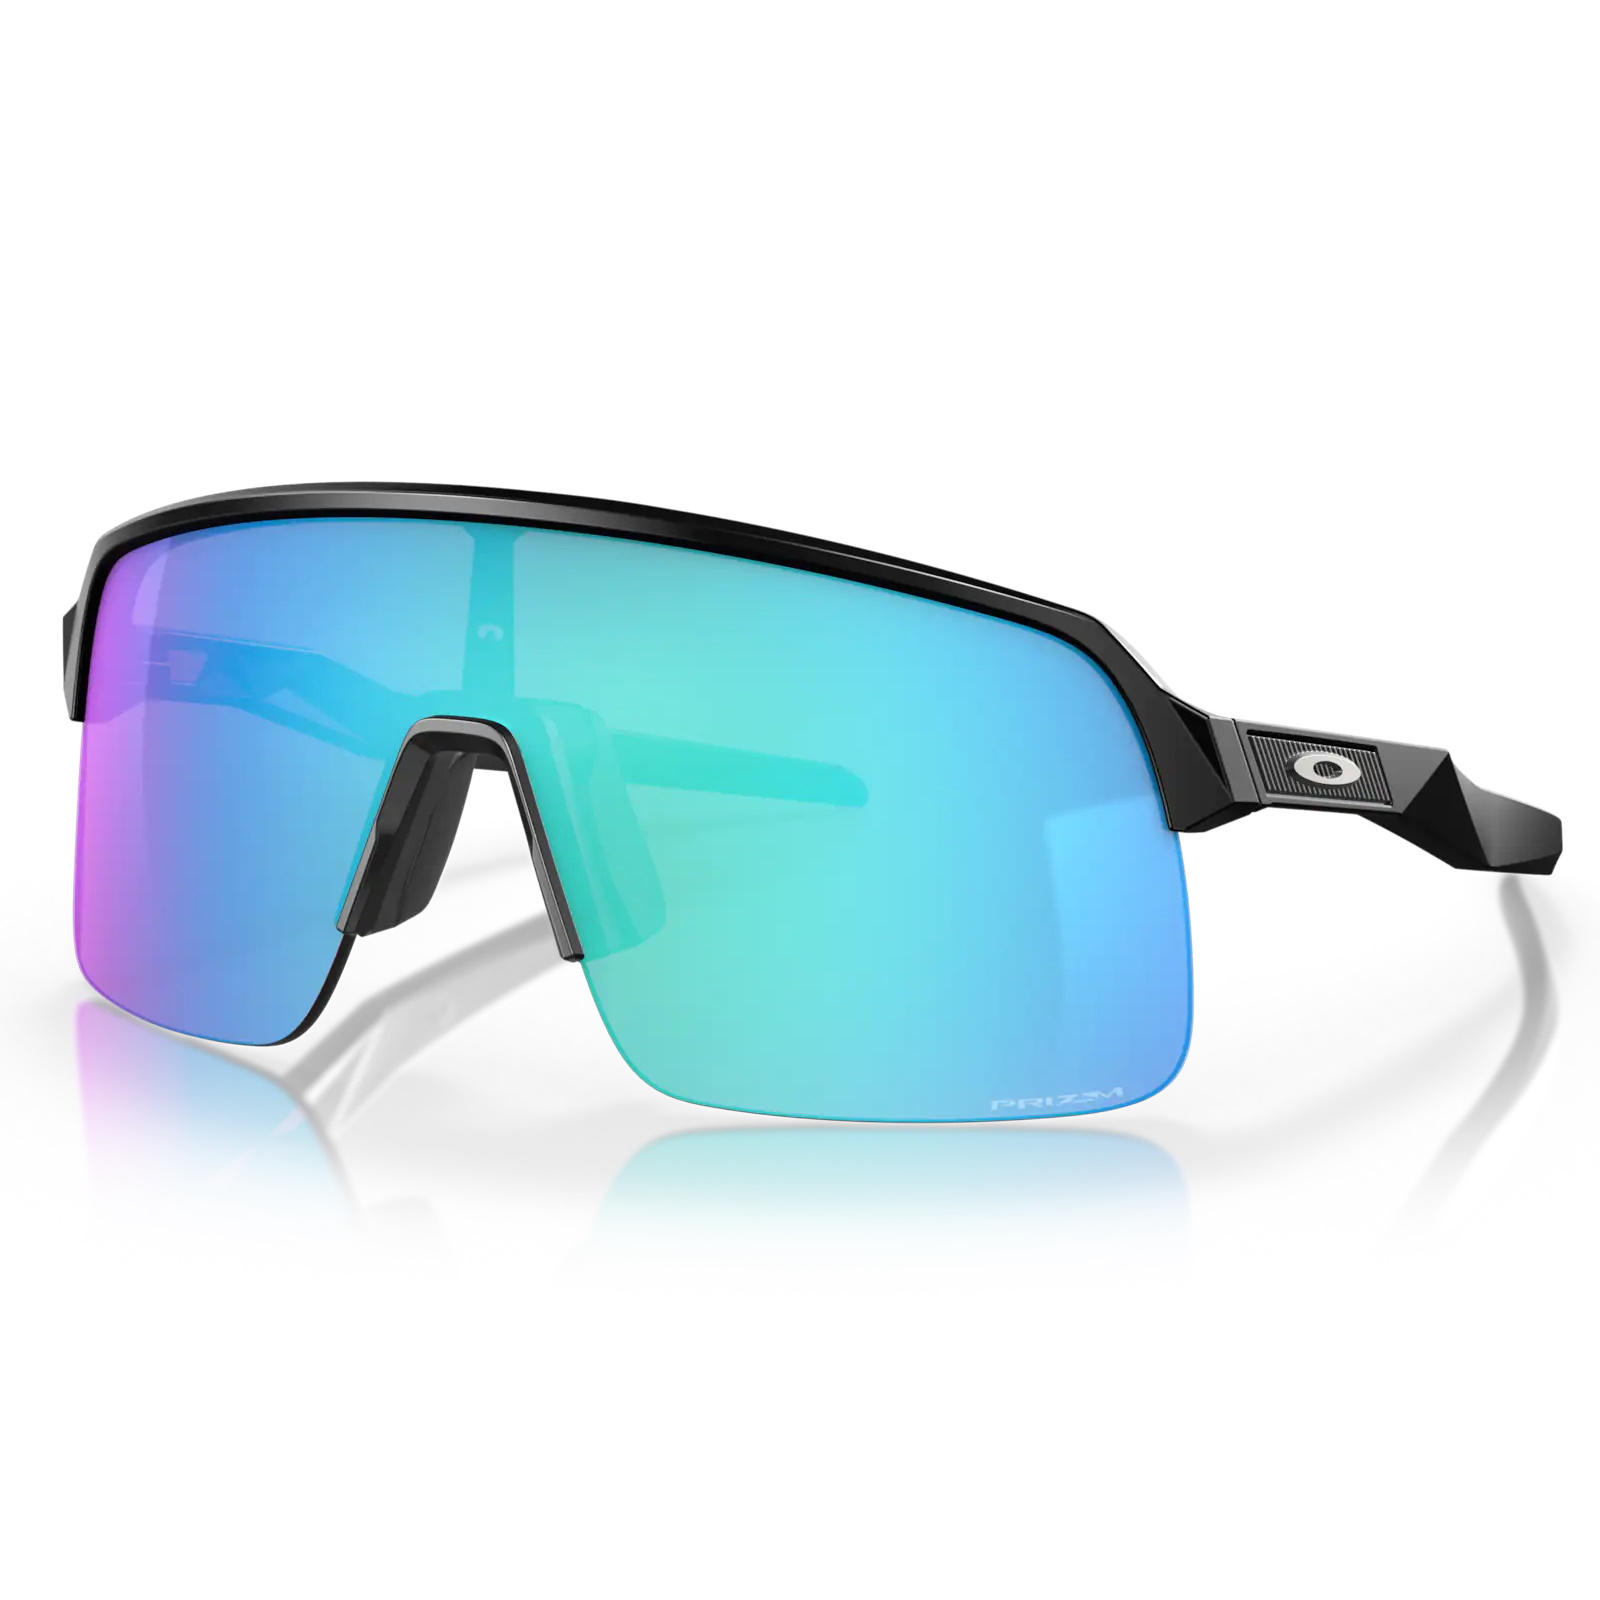 Sonnenbrillen - Online kaufen | Sportbrillen